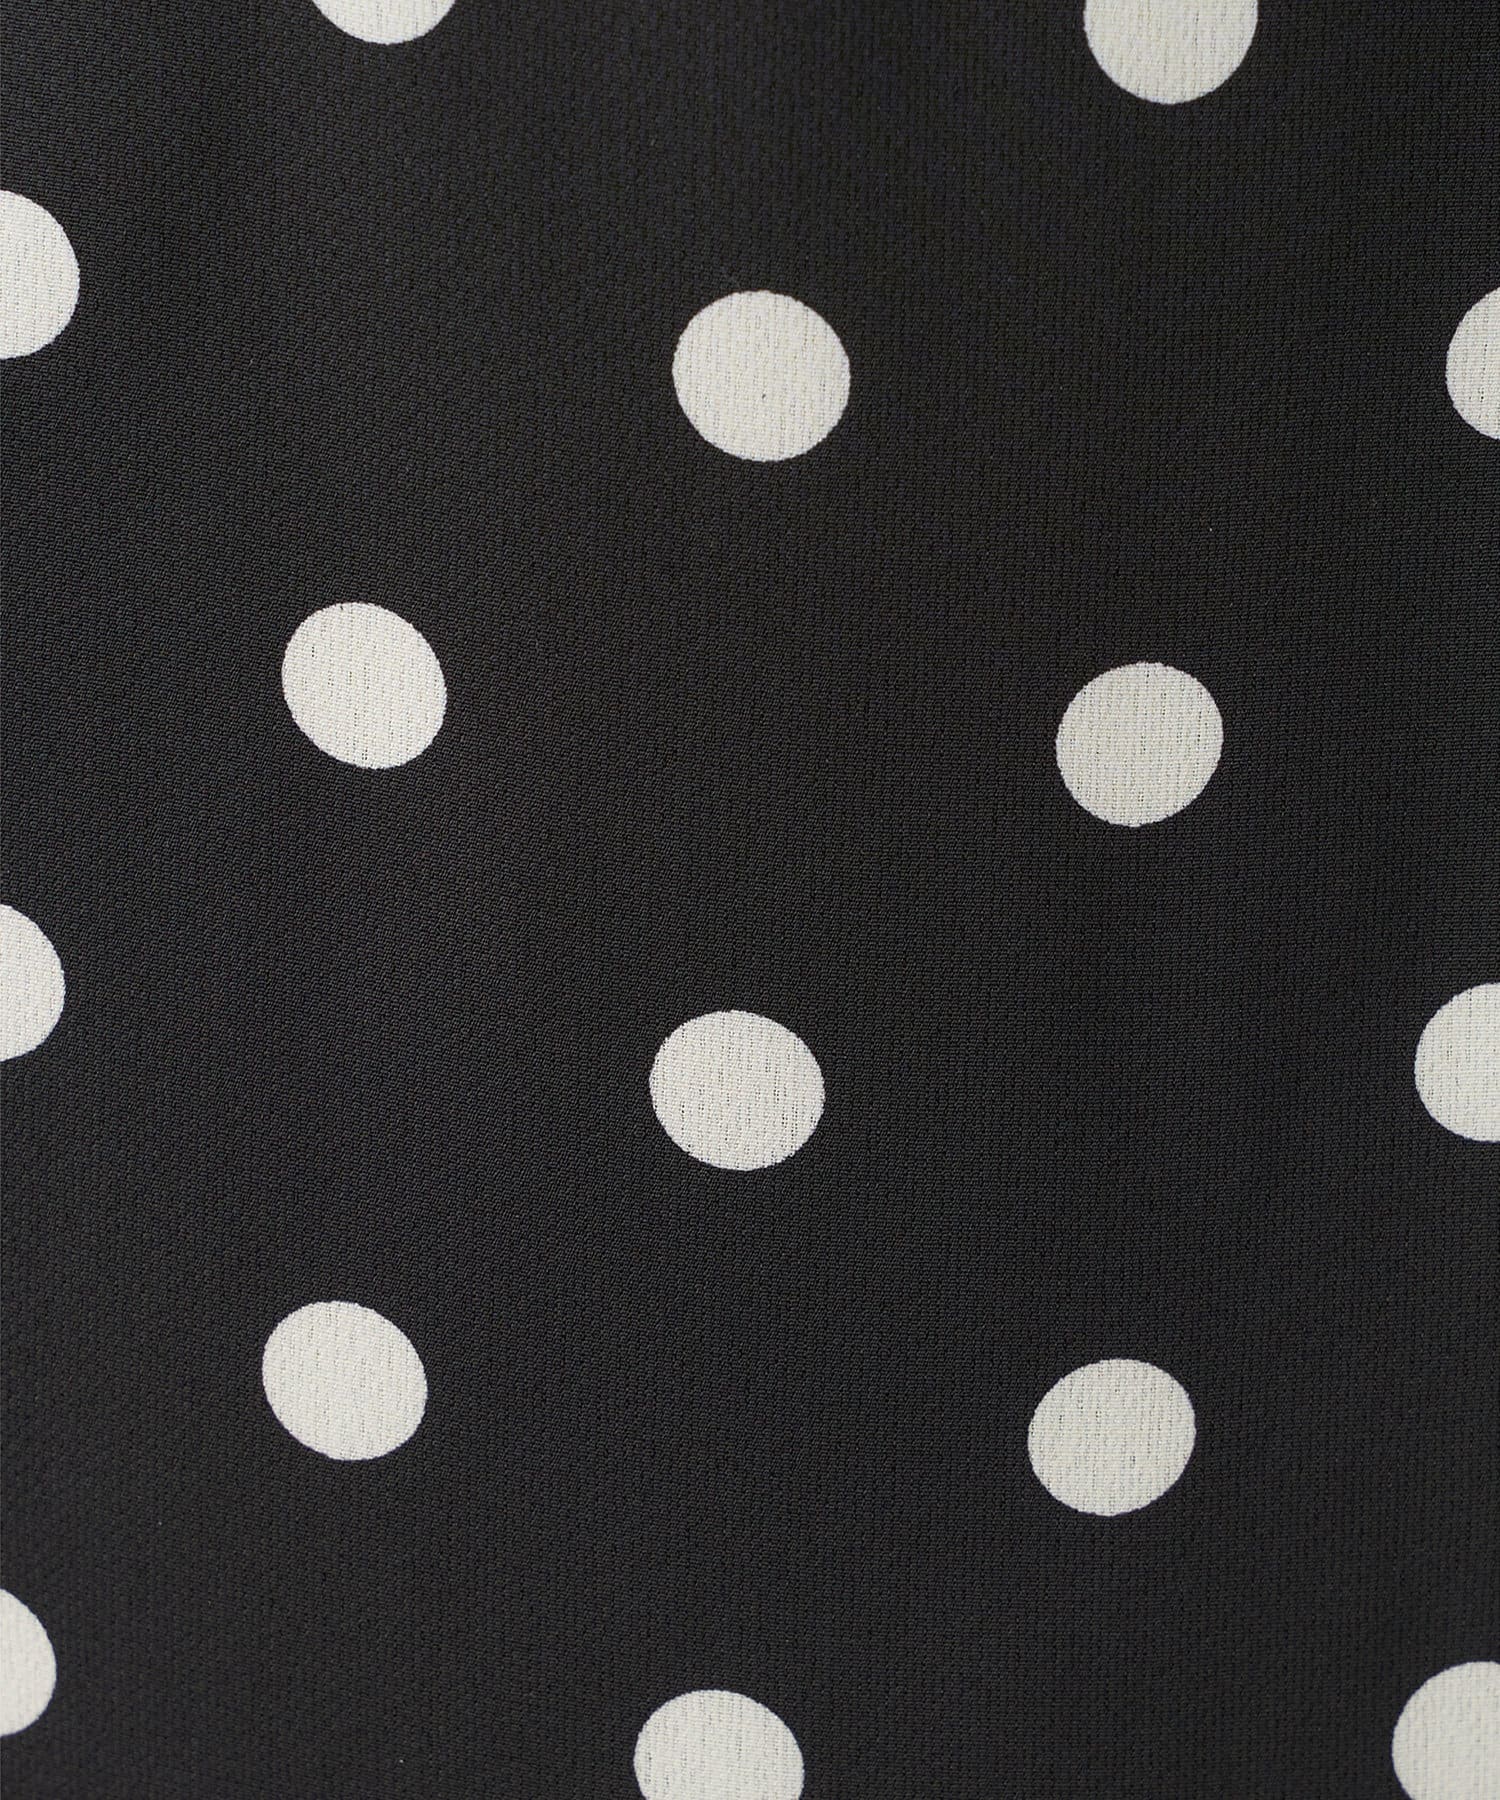 natural couture(ナチュラルクチュール) 【WEB限定】osono長さ変えれるレトロドットスカート